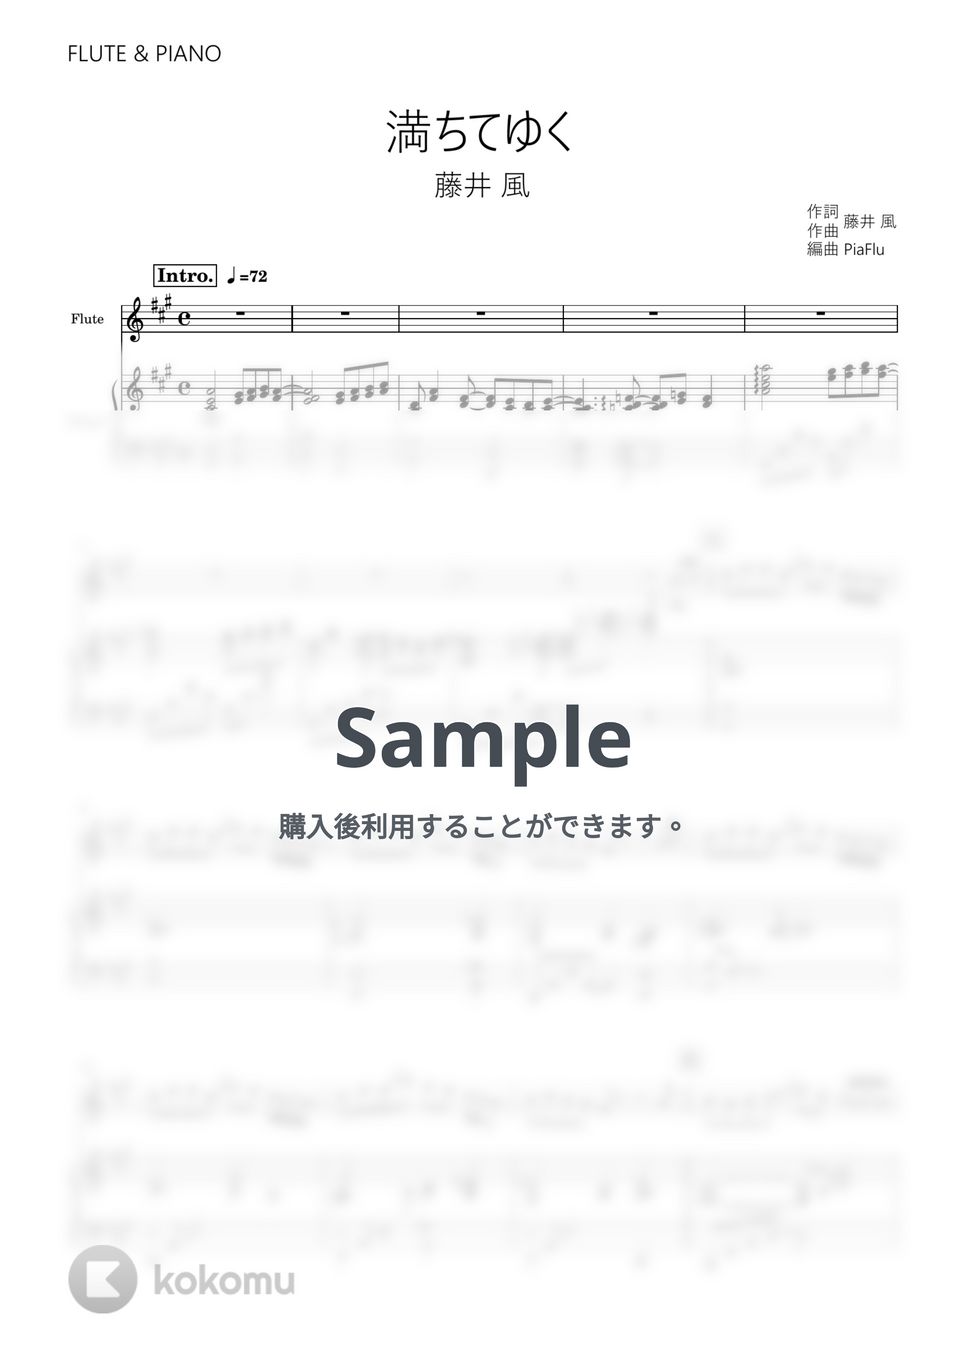 藤井 風 - 満ちてゆく (フルート&ピアノ伴奏) by PiaFlu